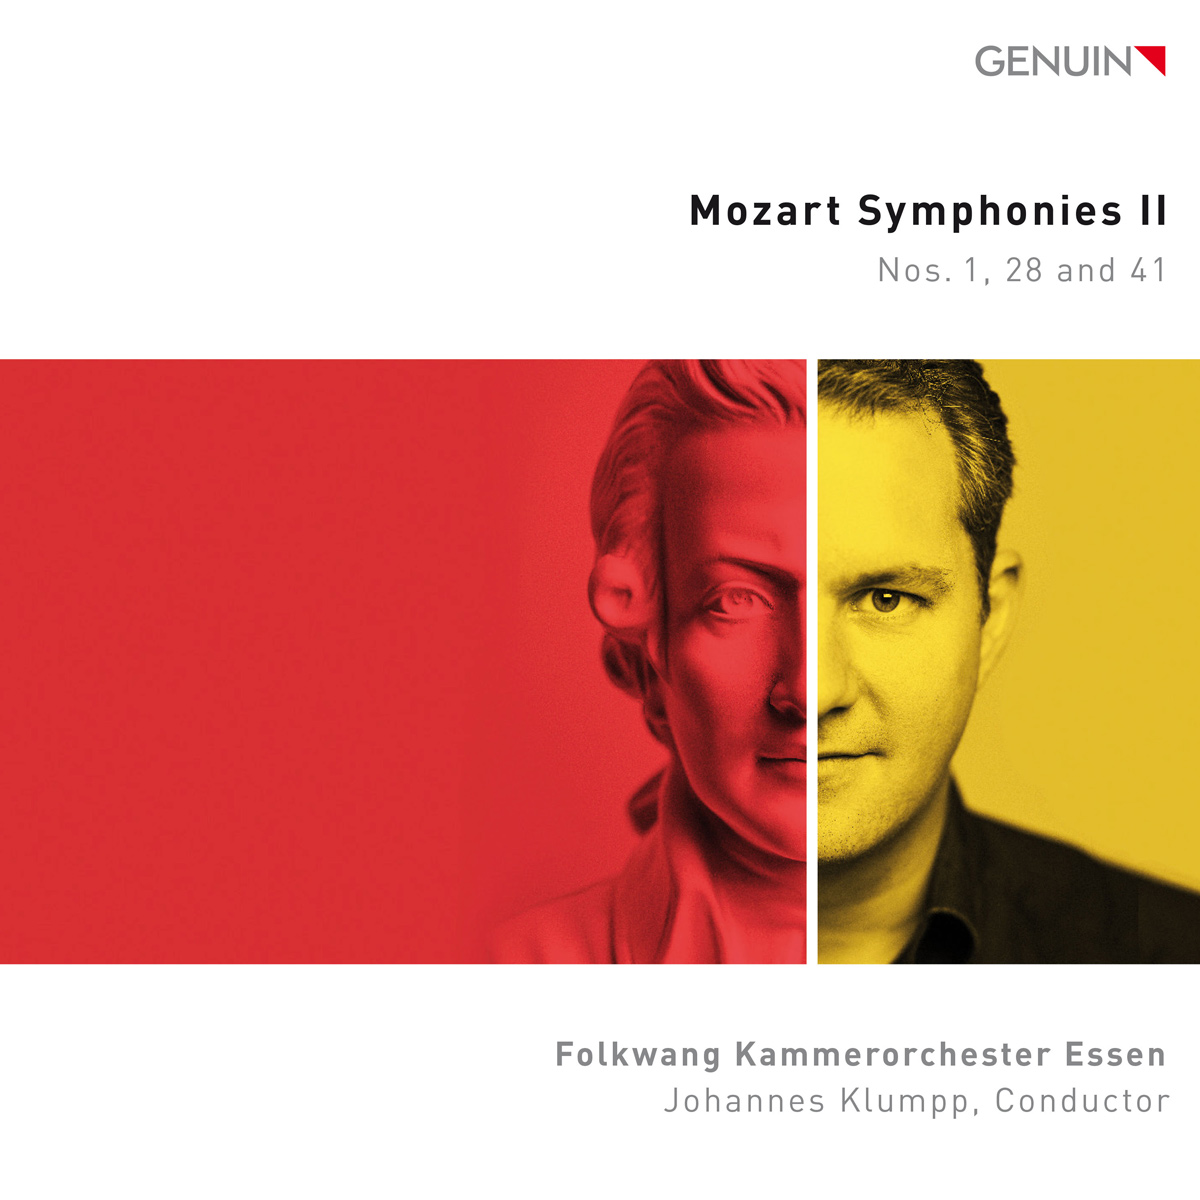 CD album cover 'Mozart-Sinfonien II' (GEN 22783) with Folkwang Kammerorchester Essen, Johannes Klumpp